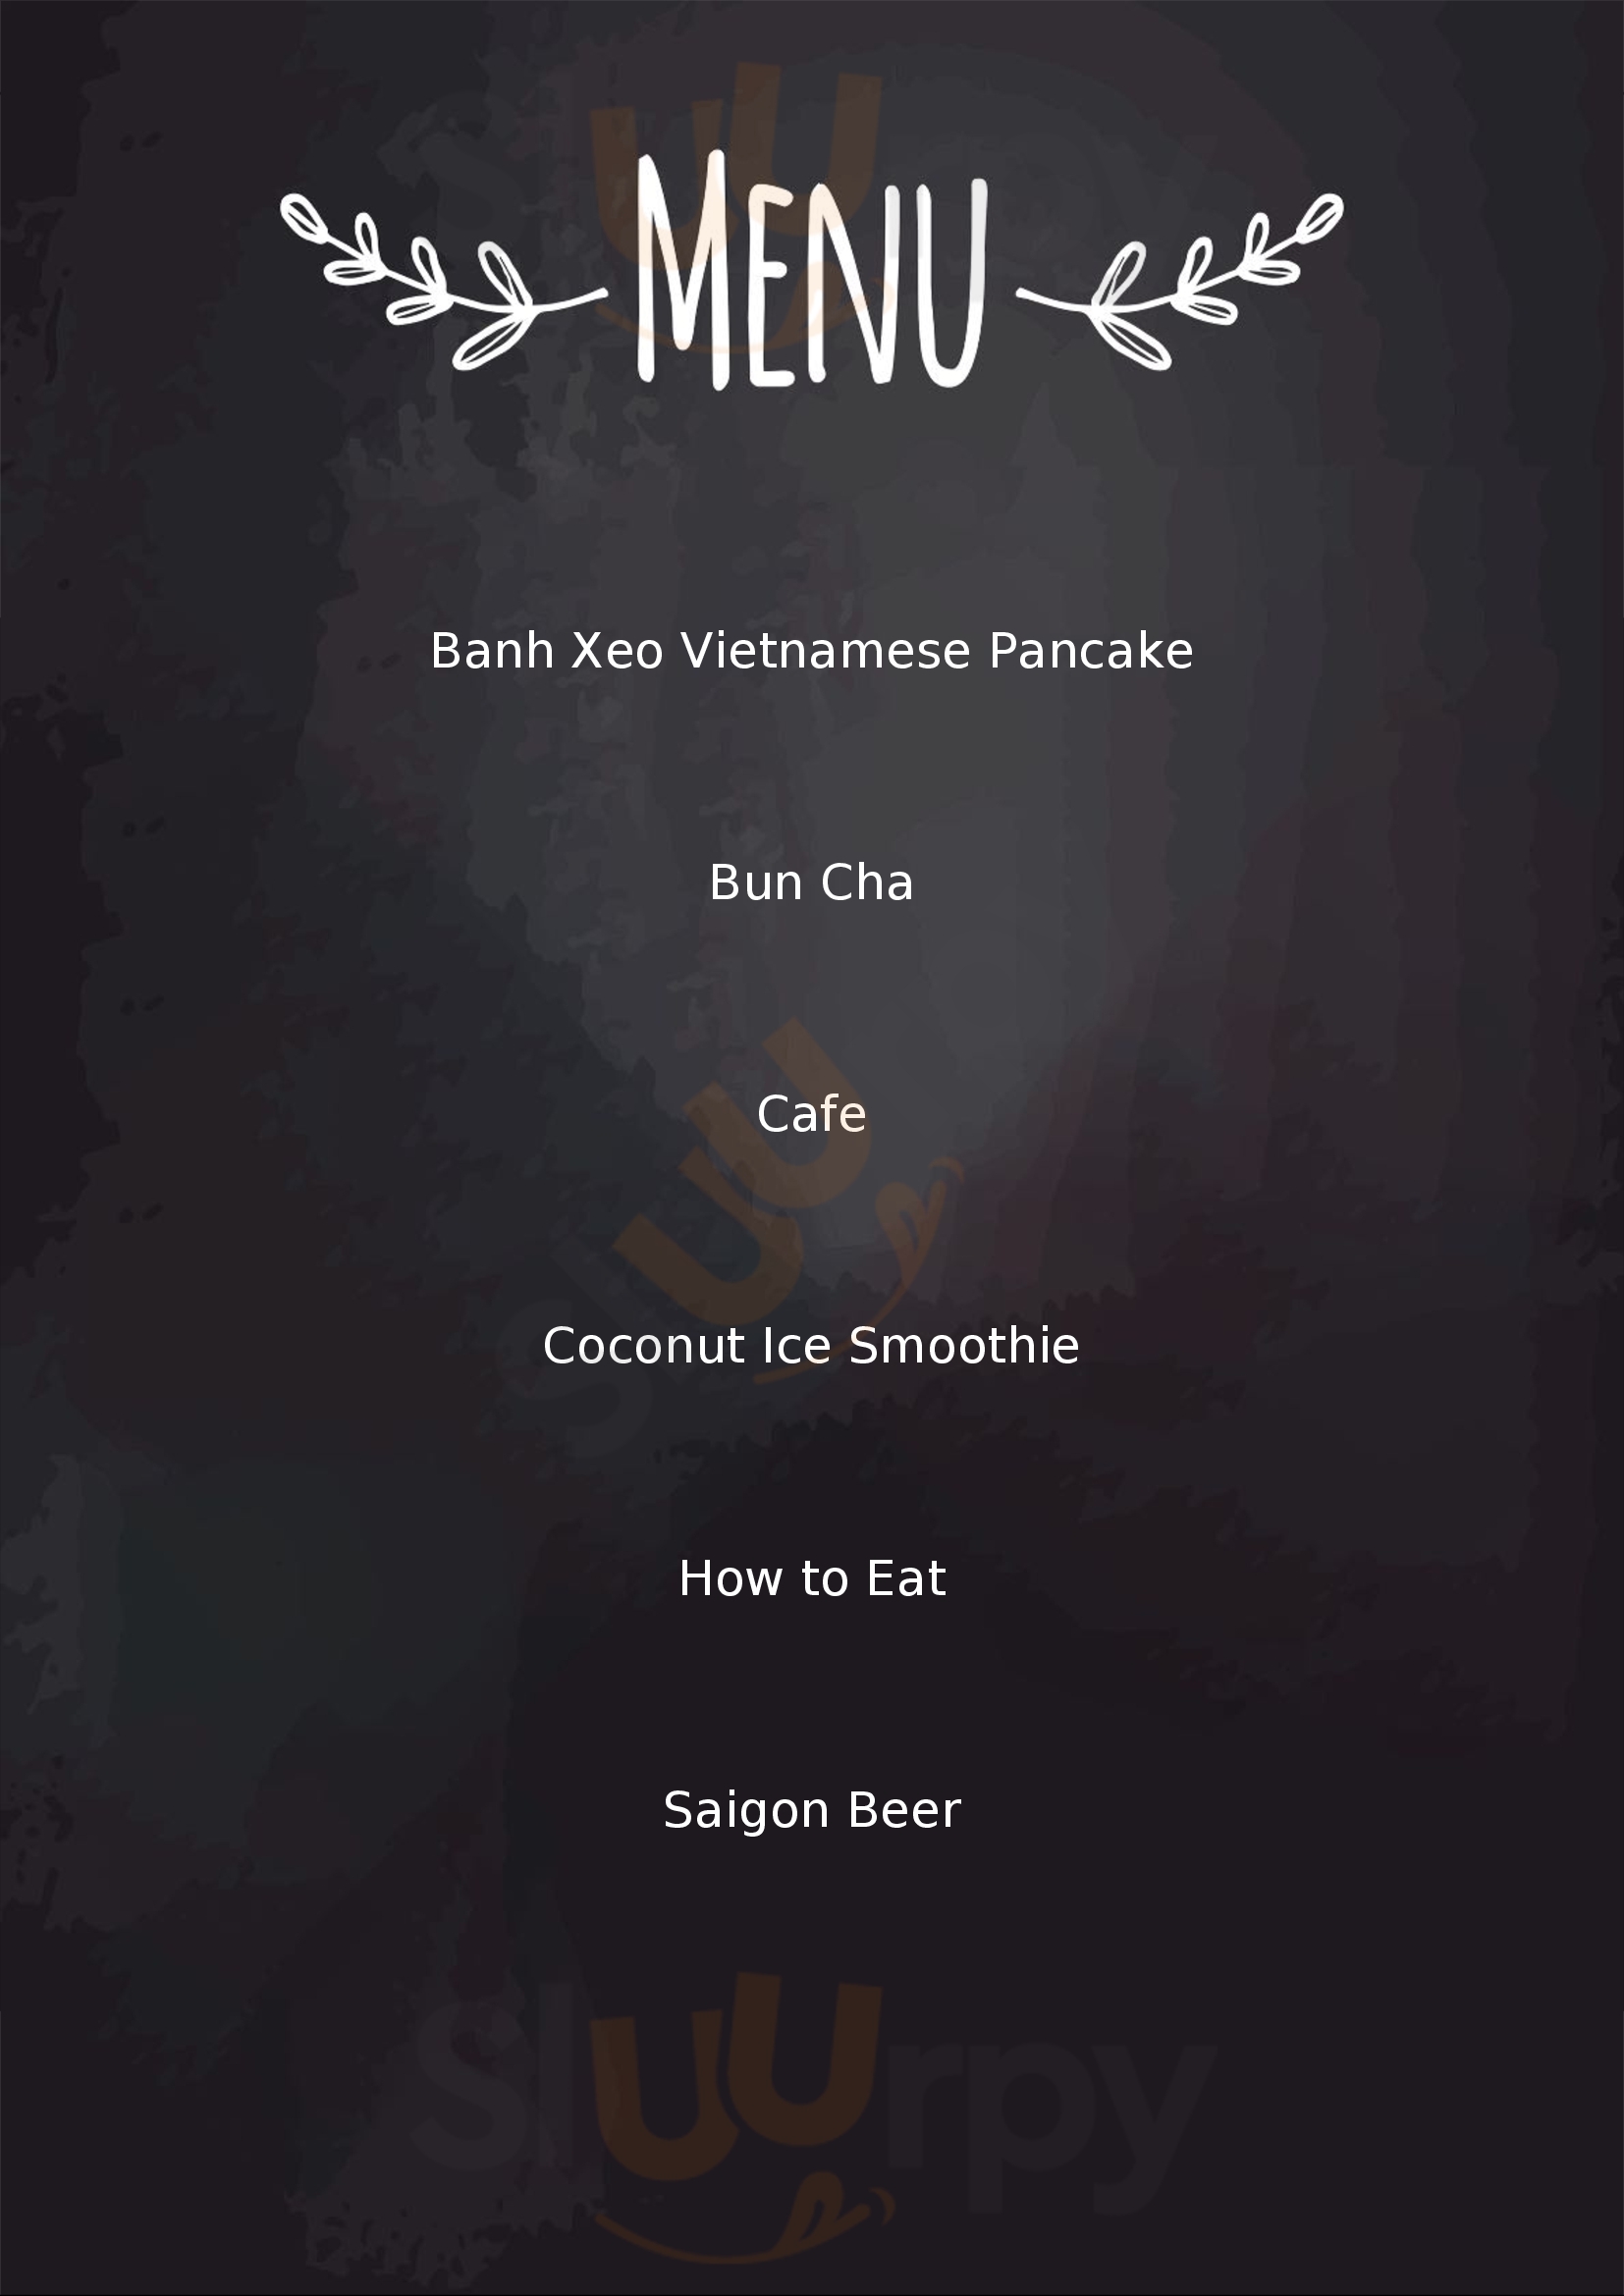 Non La Kitchen - Banh Xeo - Bun Cha Cua Lap Menu - 1